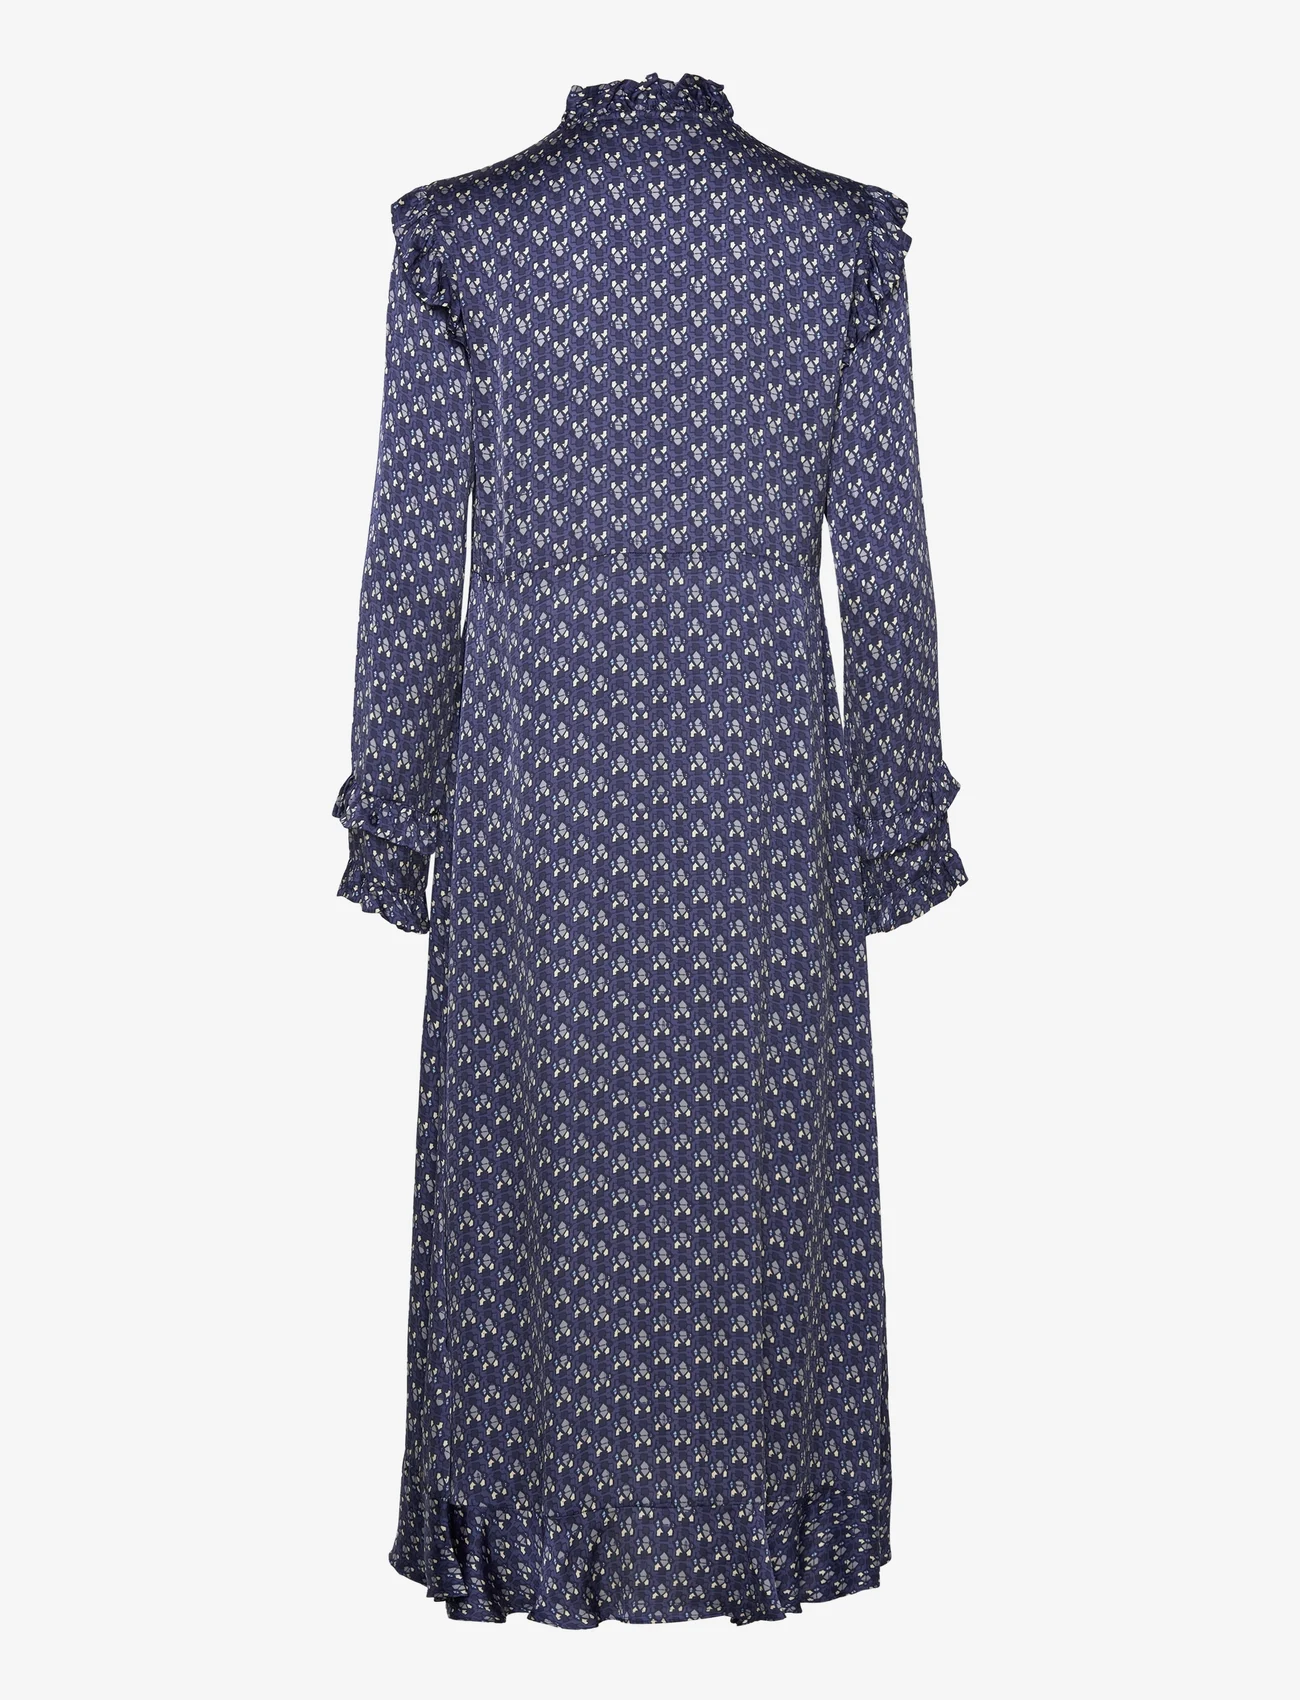 ODD MOLLY - Rachael Dress - odzież imprezowa w cenach outletowych - stormy blue - 1